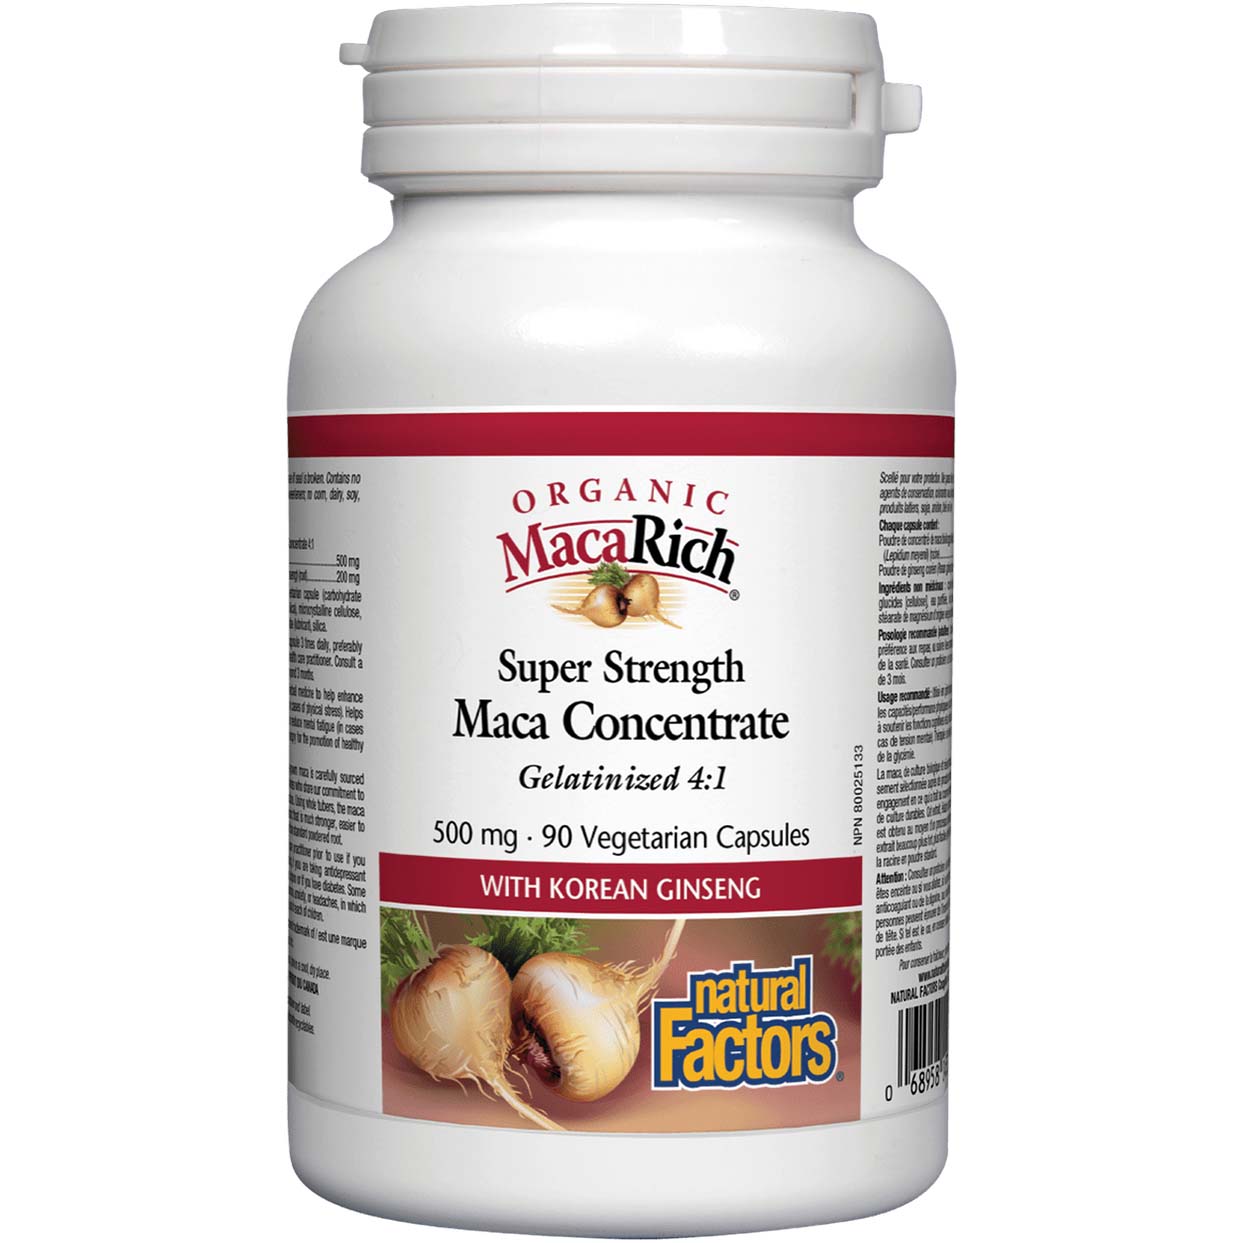 Natural Factors Maca Concentrate 90 Veggie Capsules 500 mg